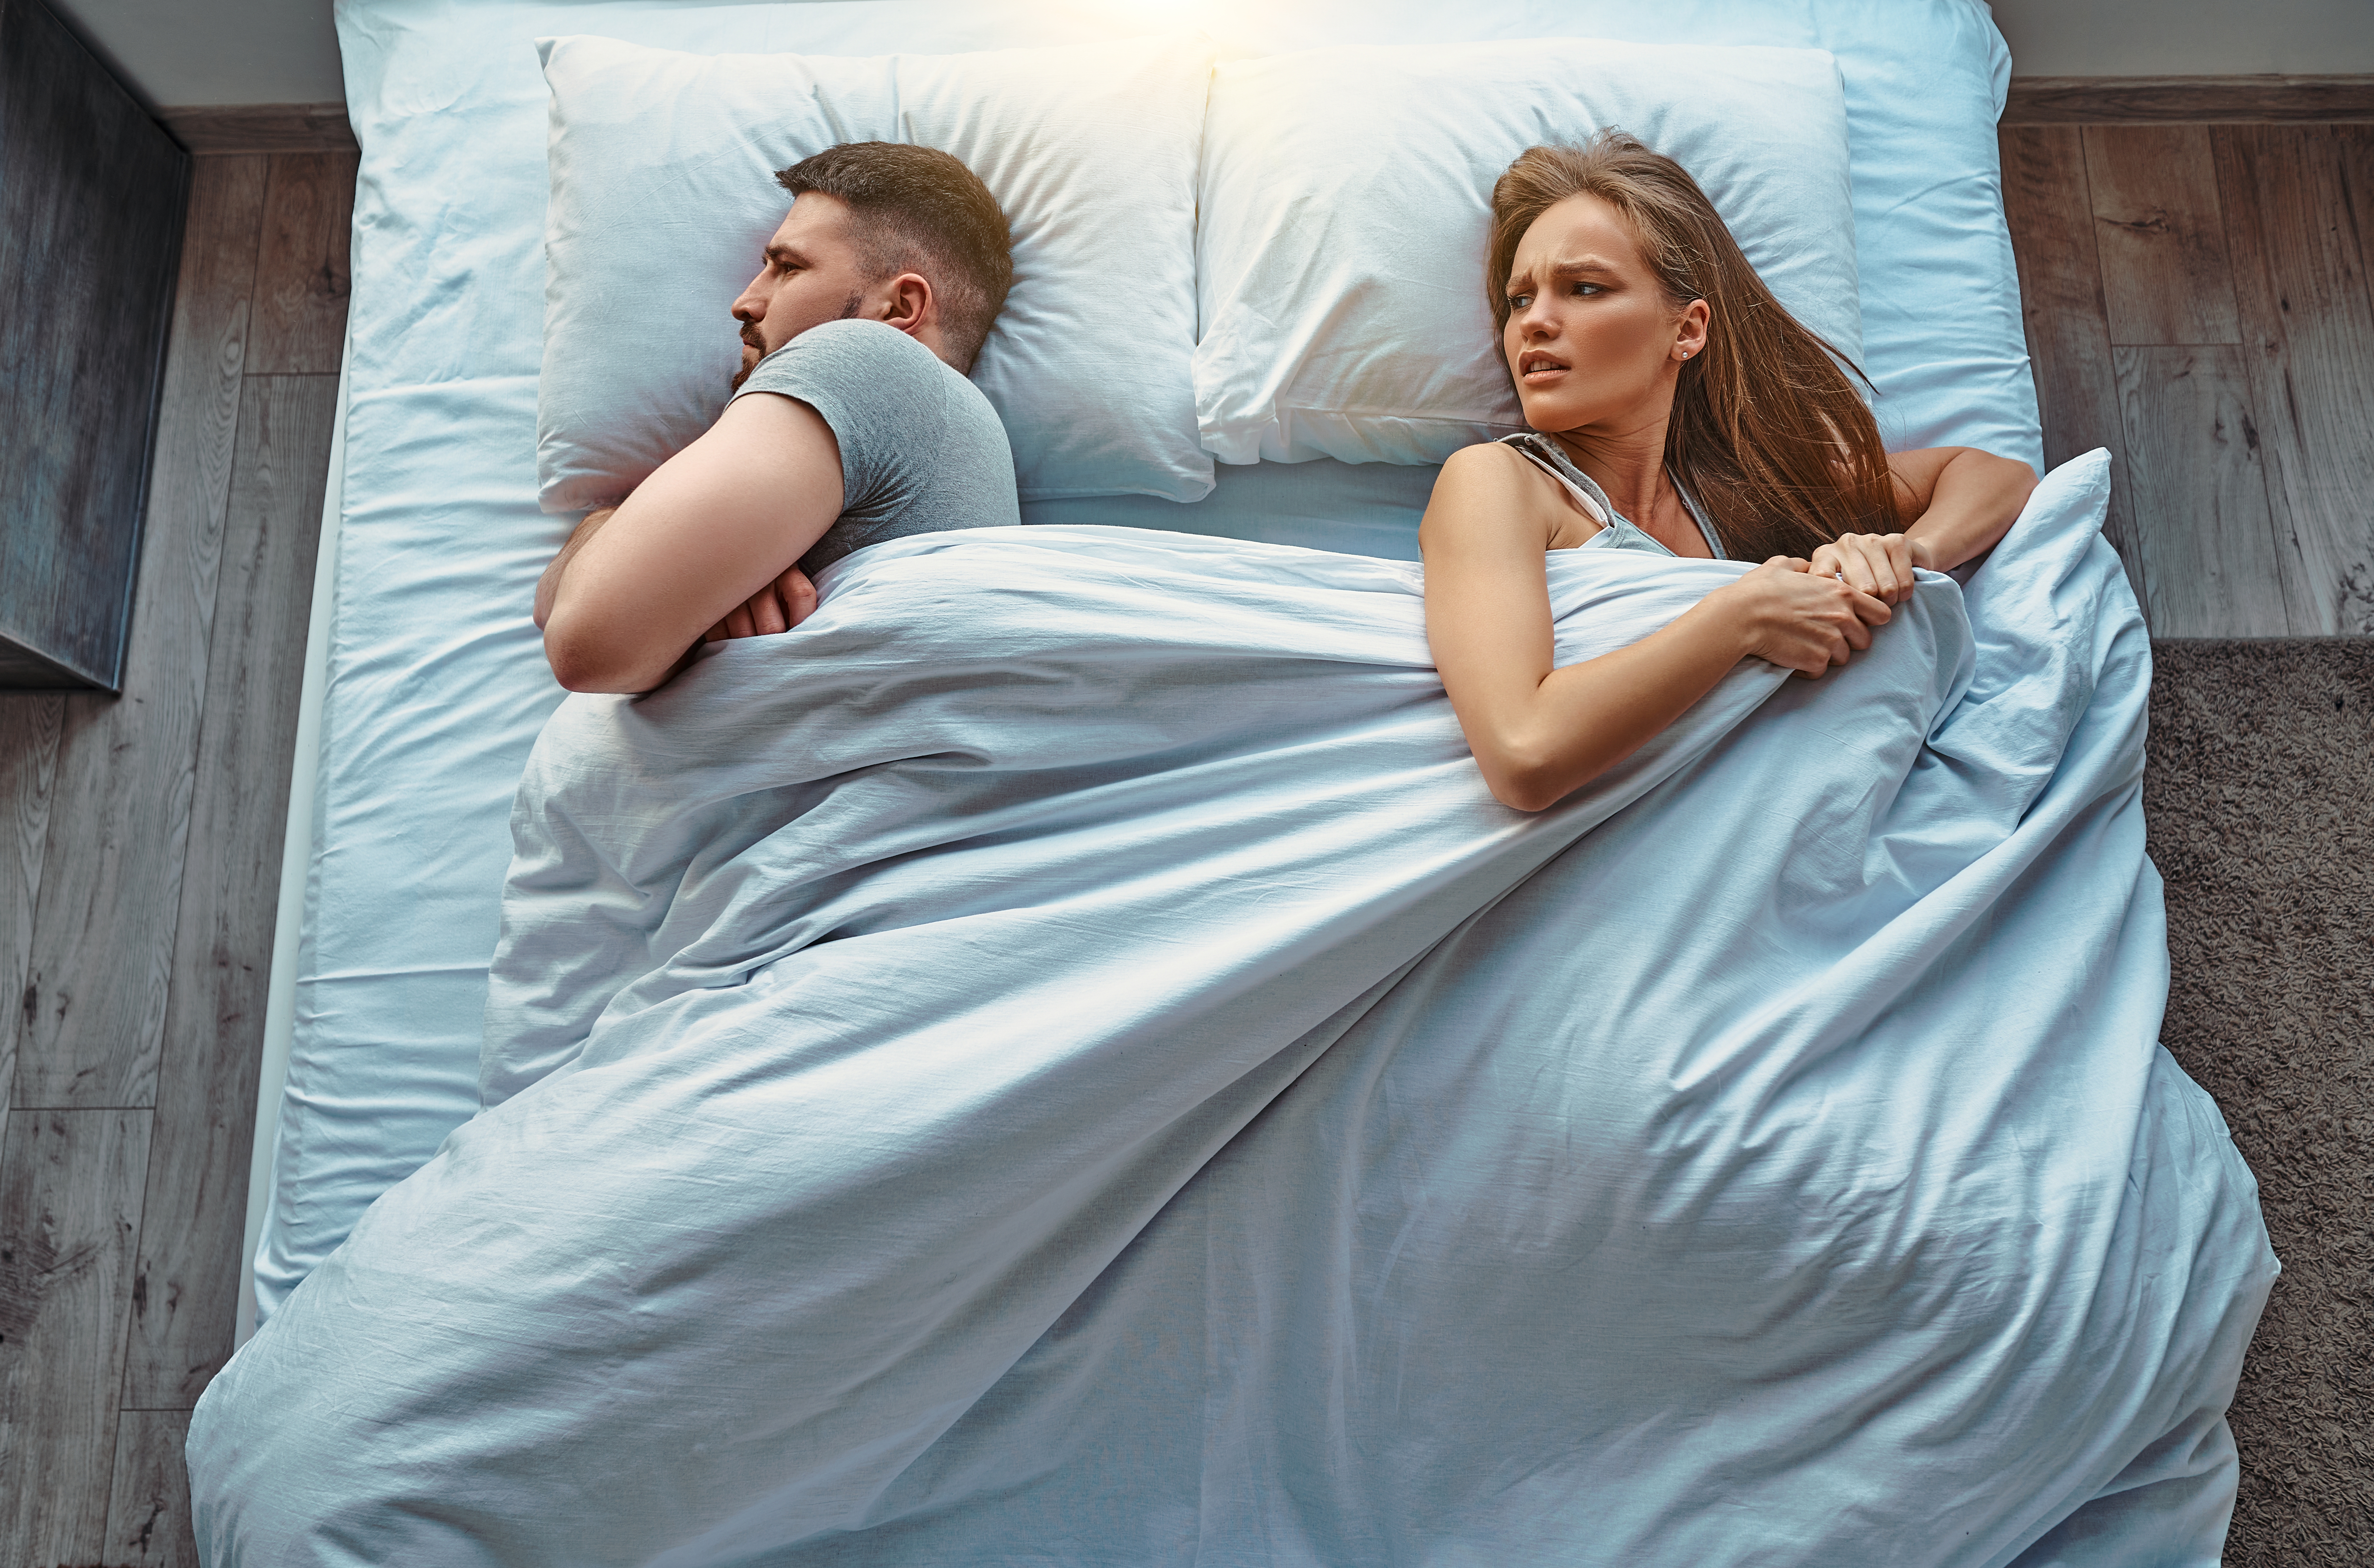 Mann und Frau streiten im Bett | Quelle: Shutterstock